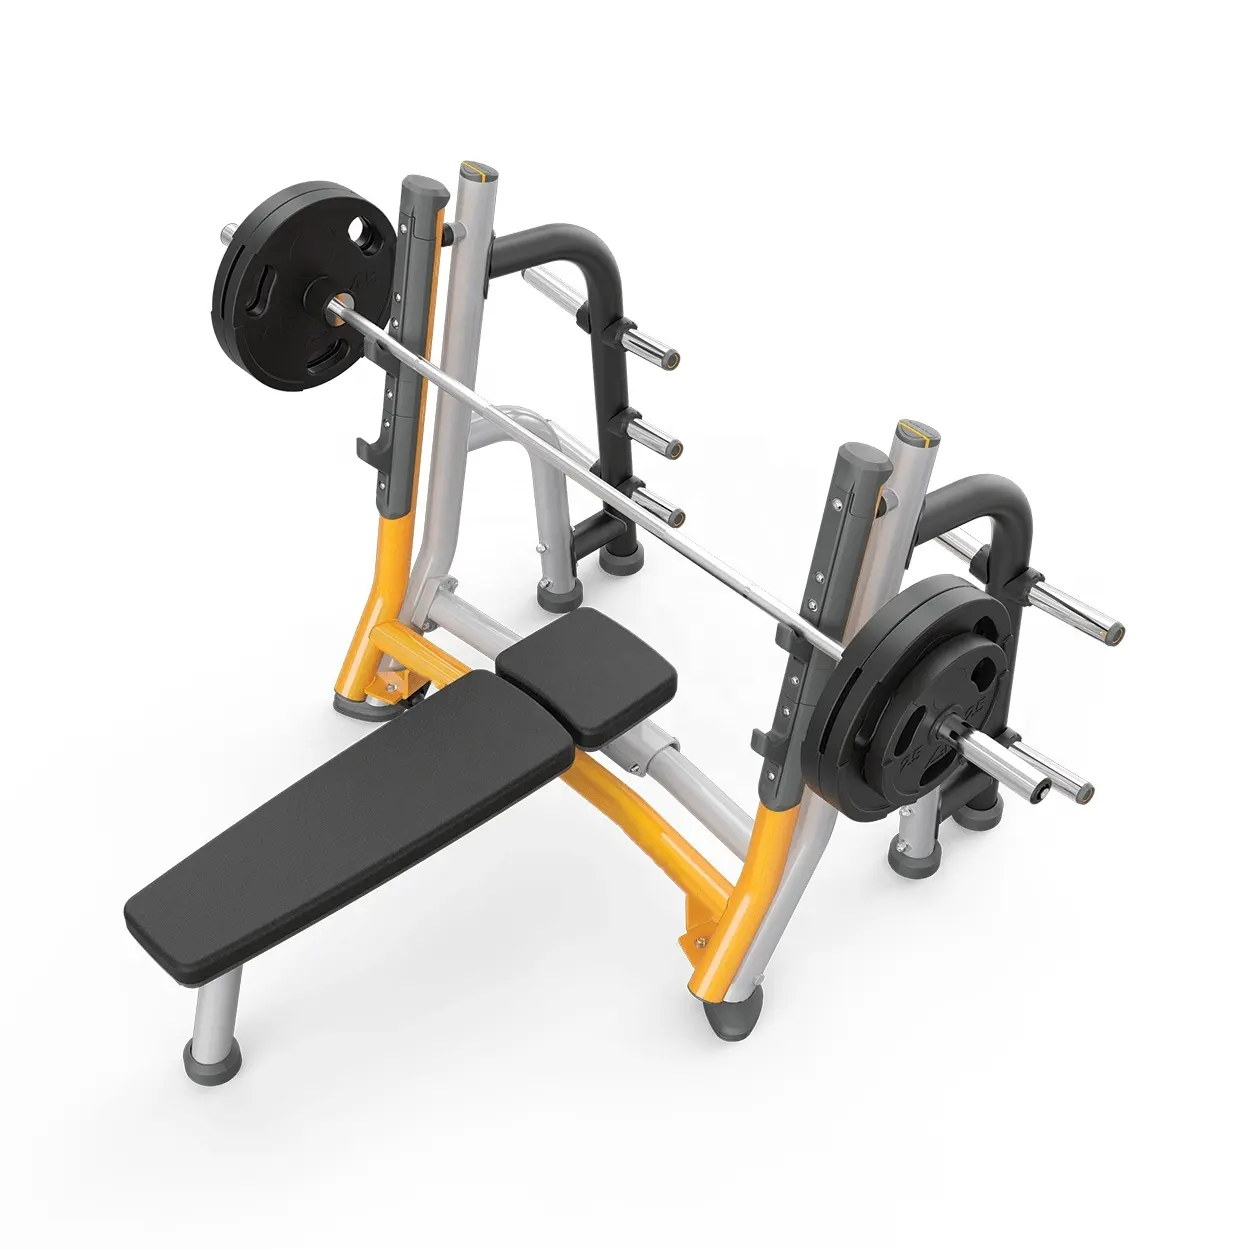 Ym cross bench press trainer attrezzature per l'allenamento bella attrezzatura per il fitness posteriore